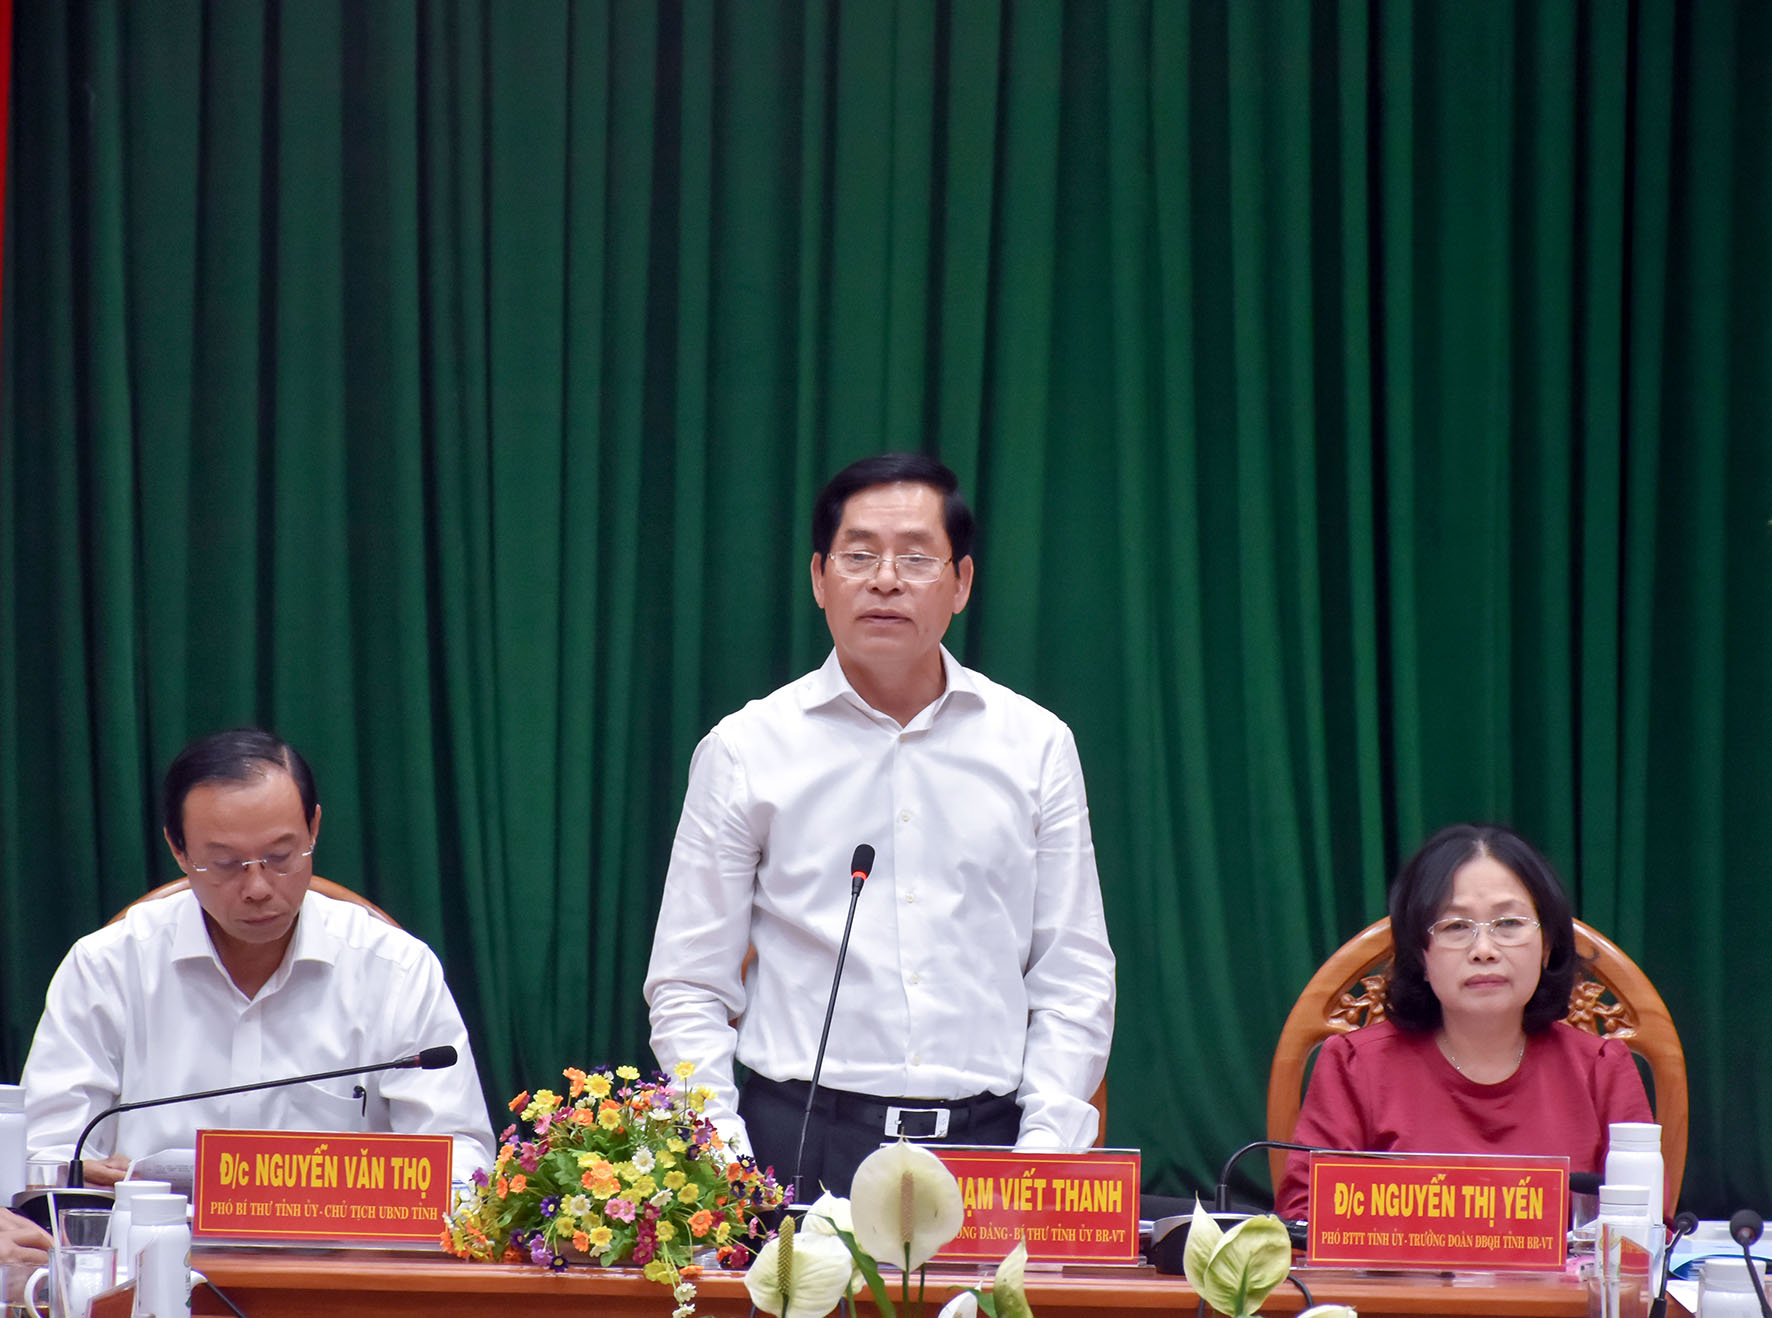 Ông Phạm Viết Thanh, Ủy viên Trung ương Đảng, Bí thư Tỉnh ủy phát biểu chỉ đạo tại cuộc làm việc.